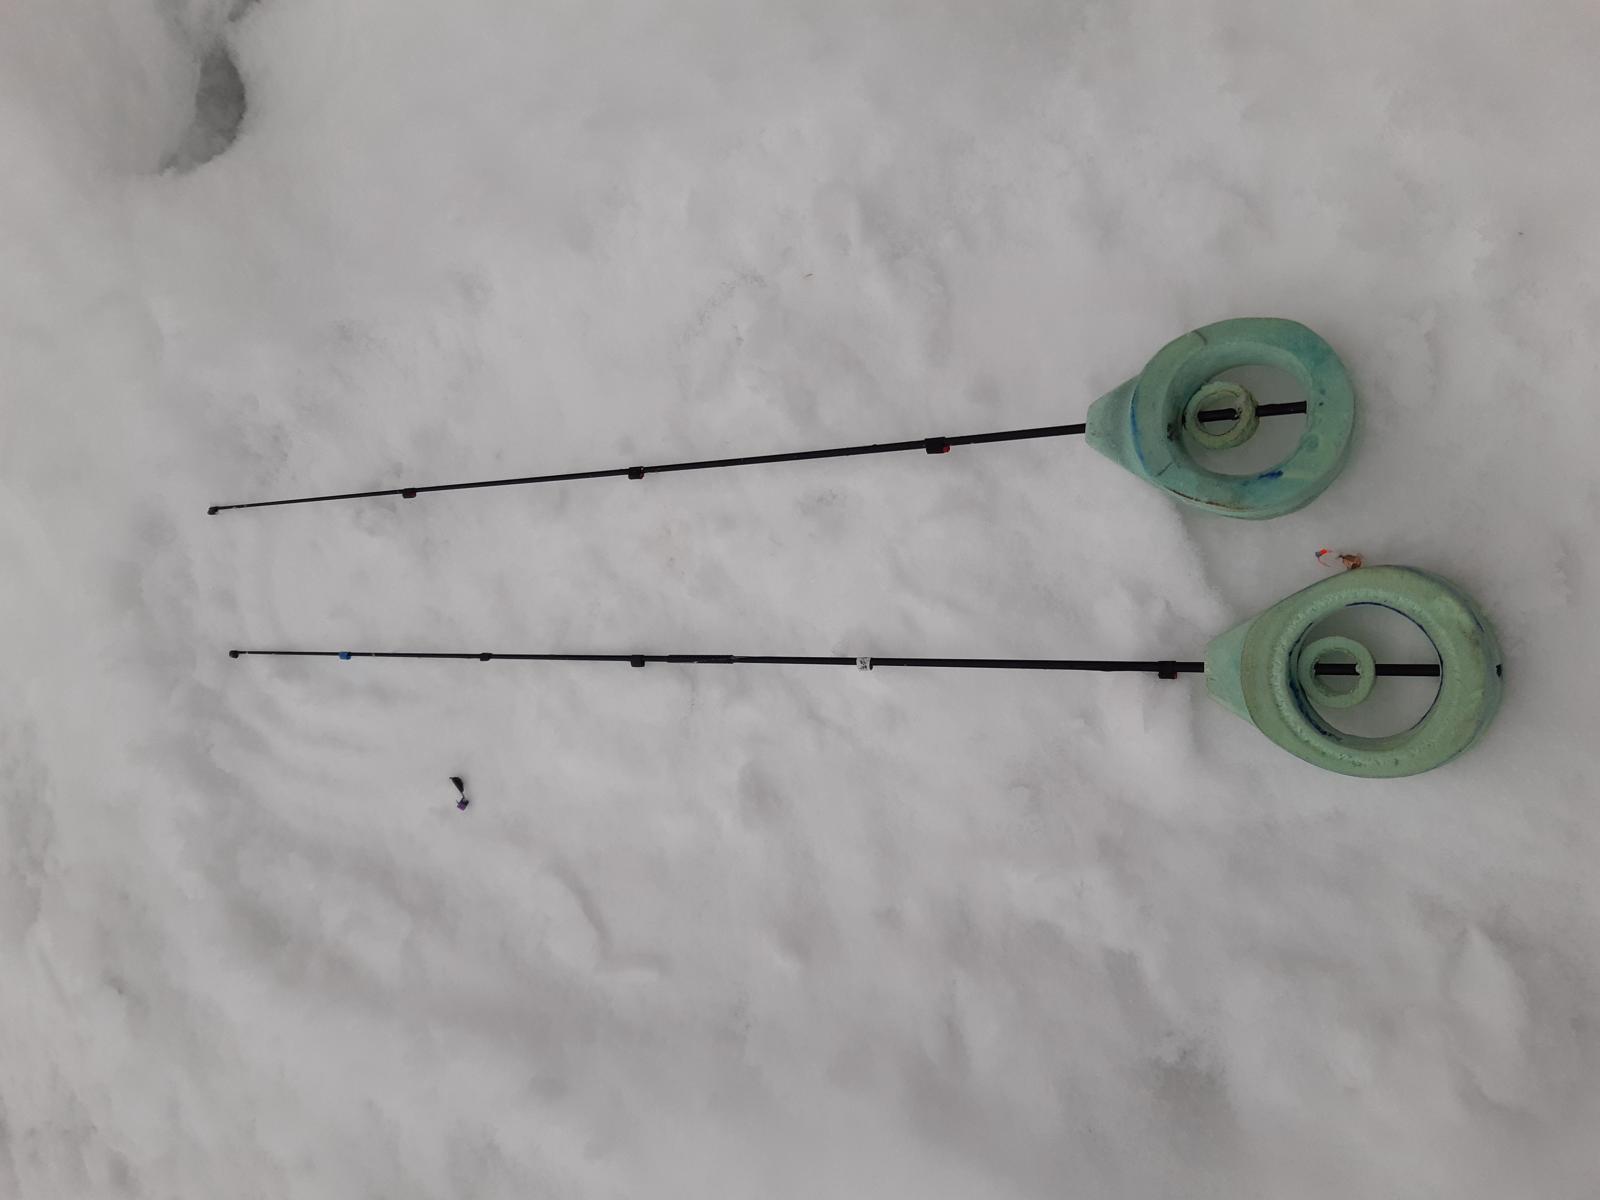 Видео о зимней рыбалке на черта и безмотылку